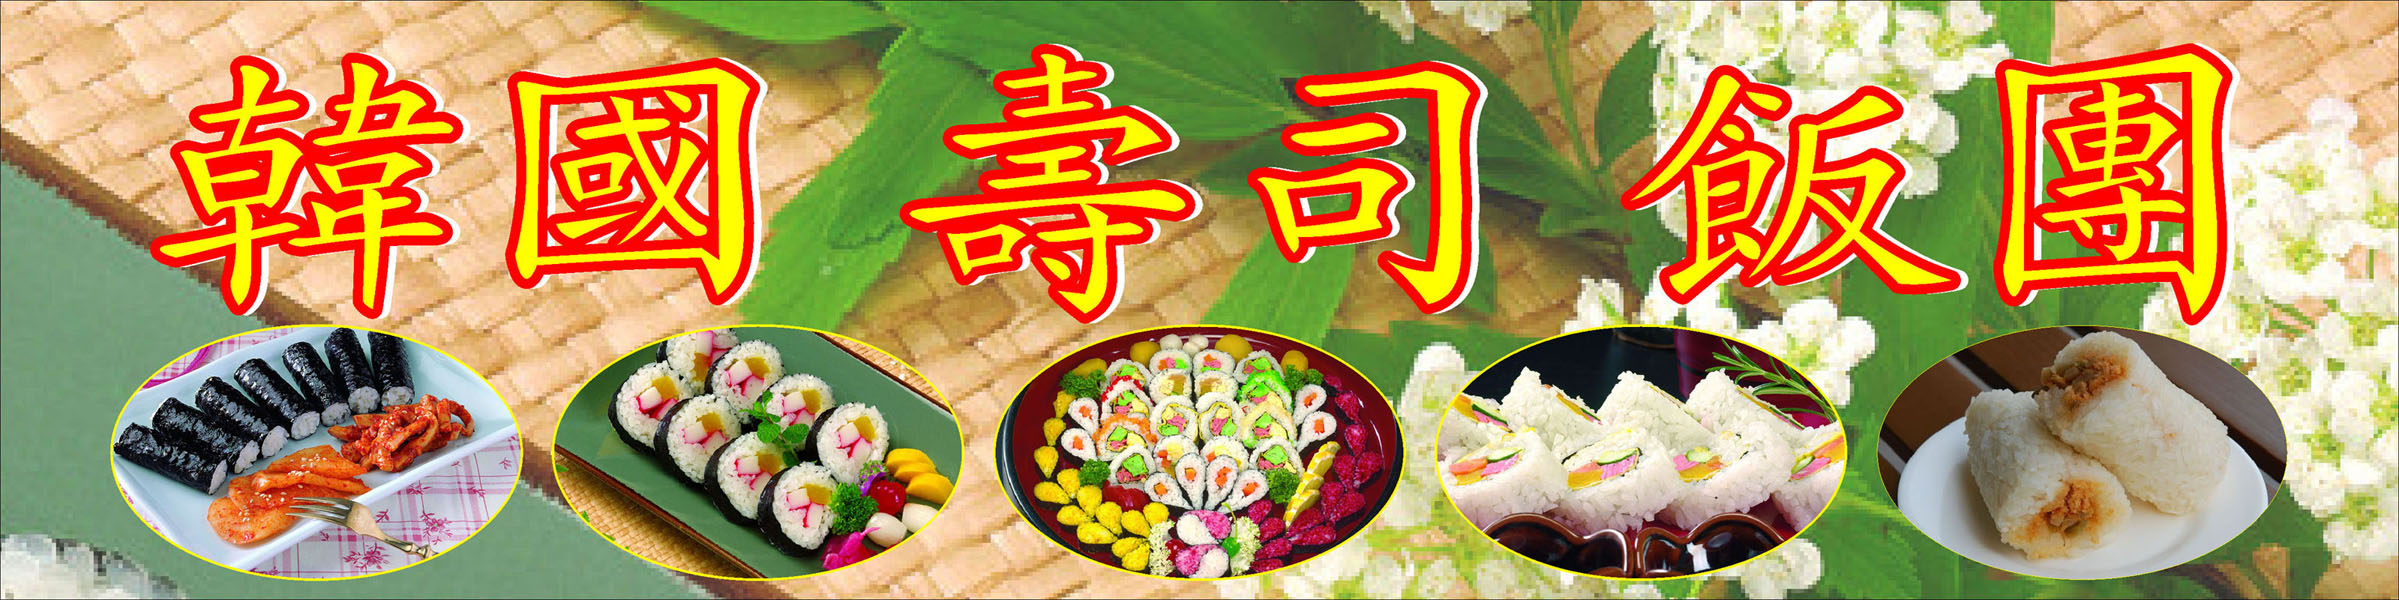 618画海报印制展板素材954韩国寿司饭团宣传